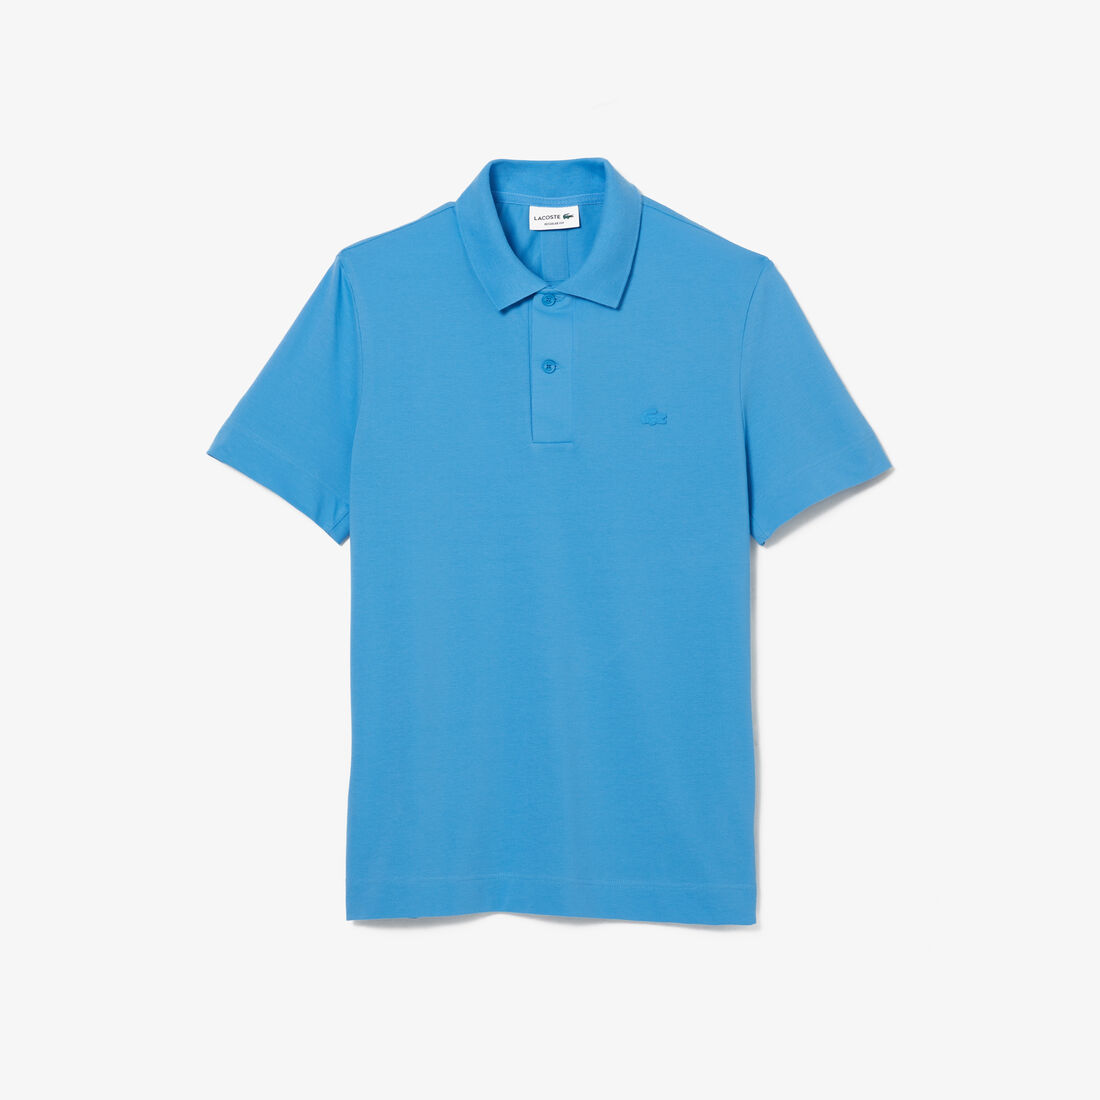 Men's Lacoste Regular Fit Breathable Cotton Piqué Polo Shirt